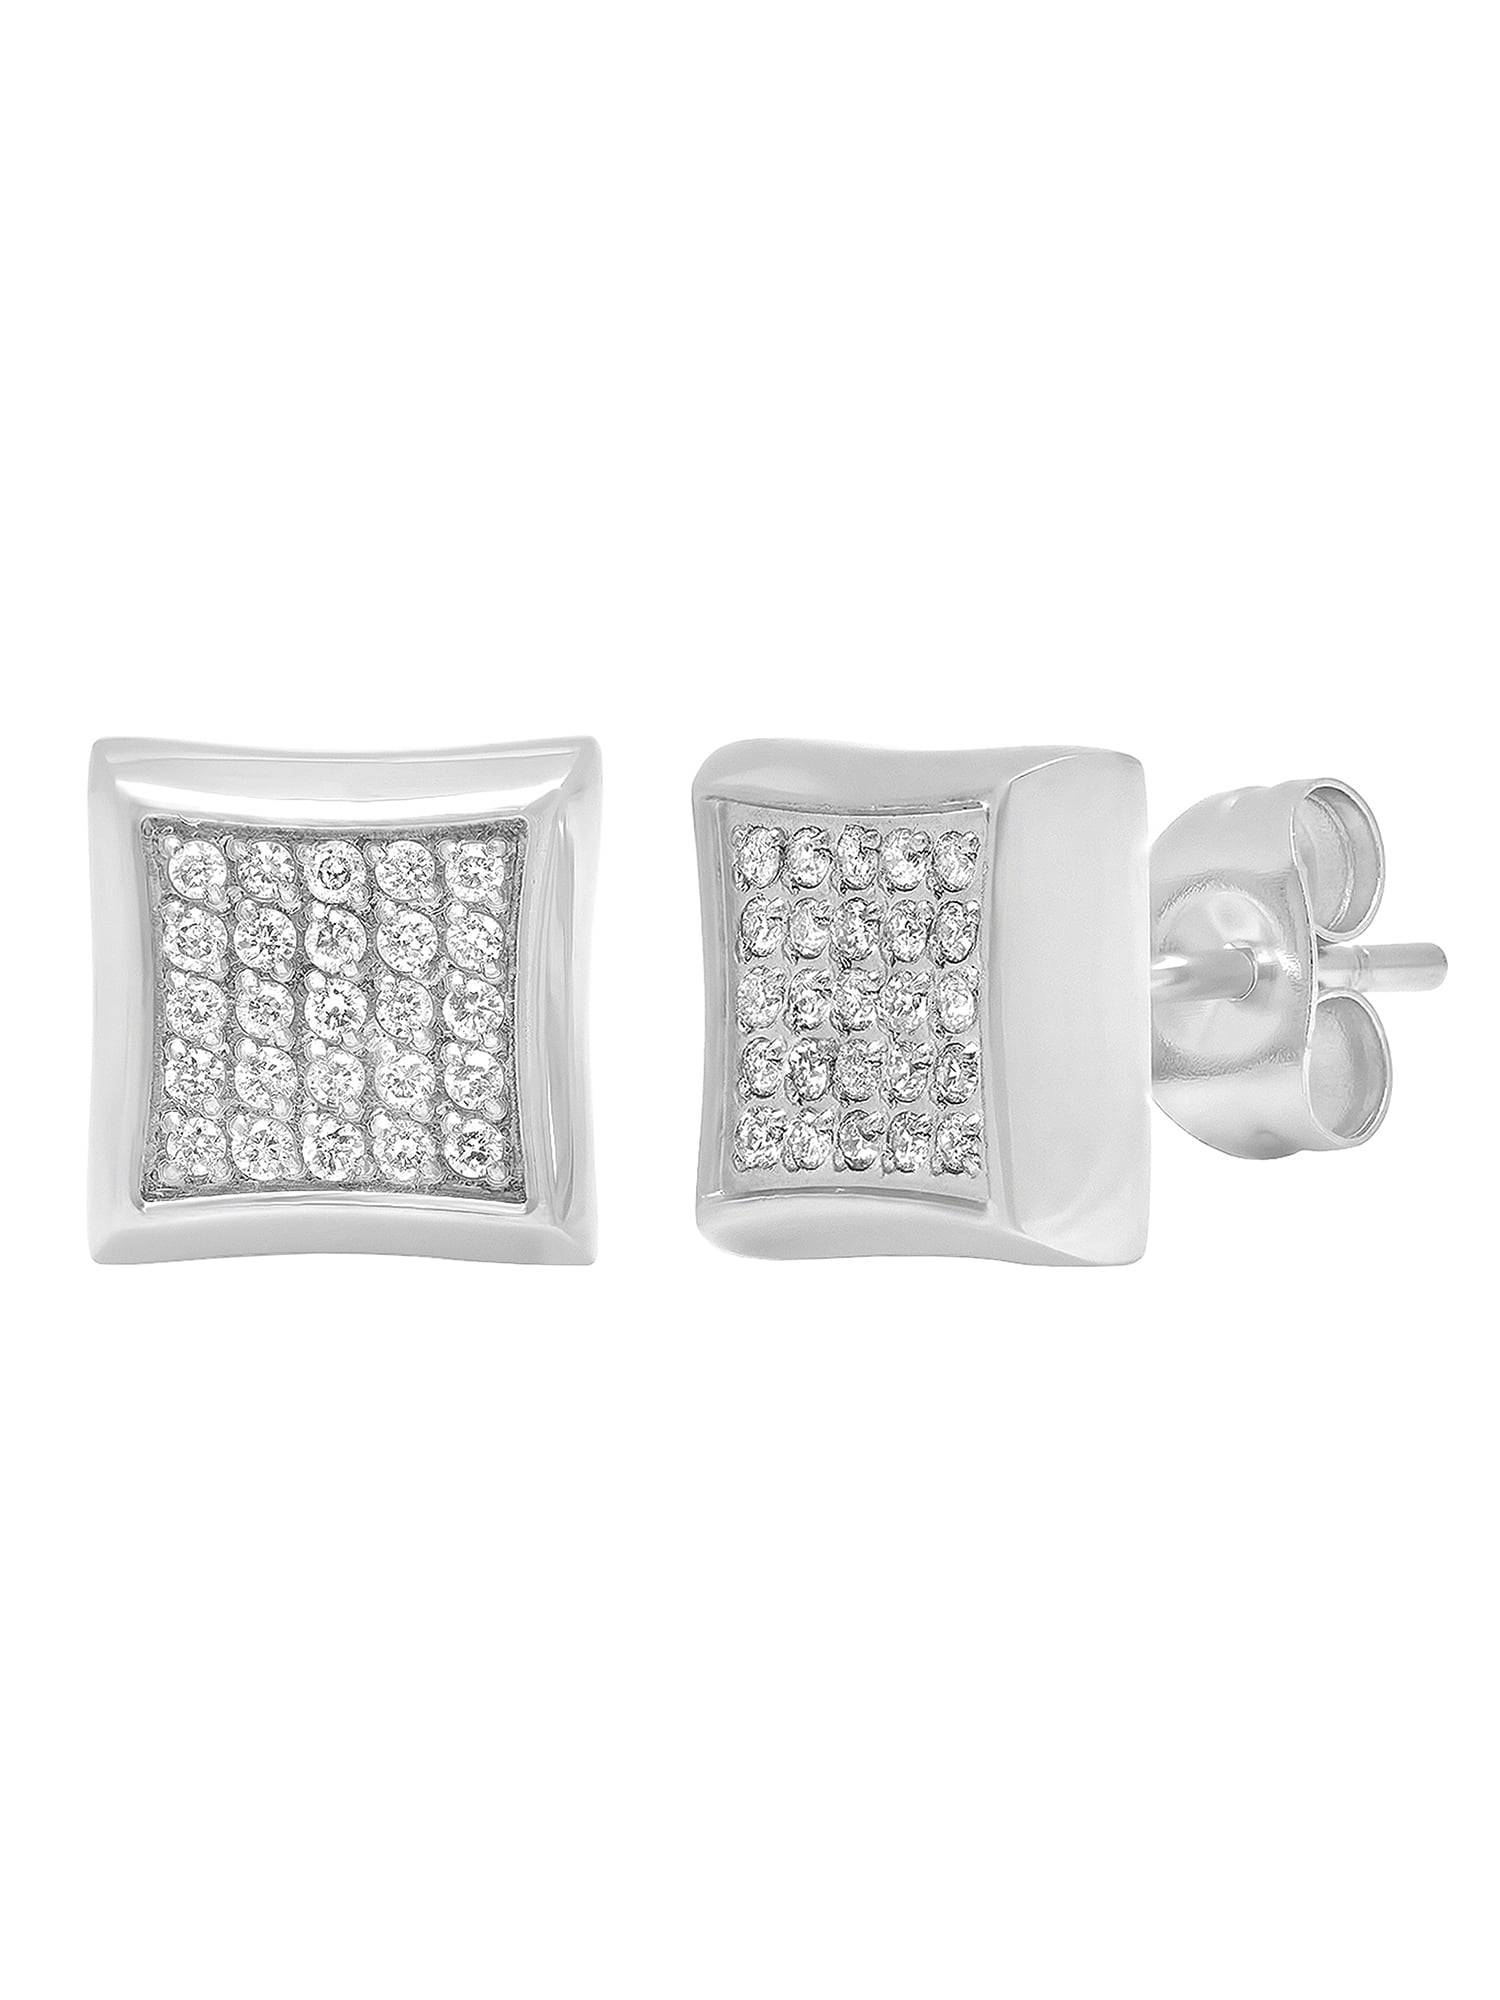 Men's Diamond Earrings in Mens Earrings - Walmart.com